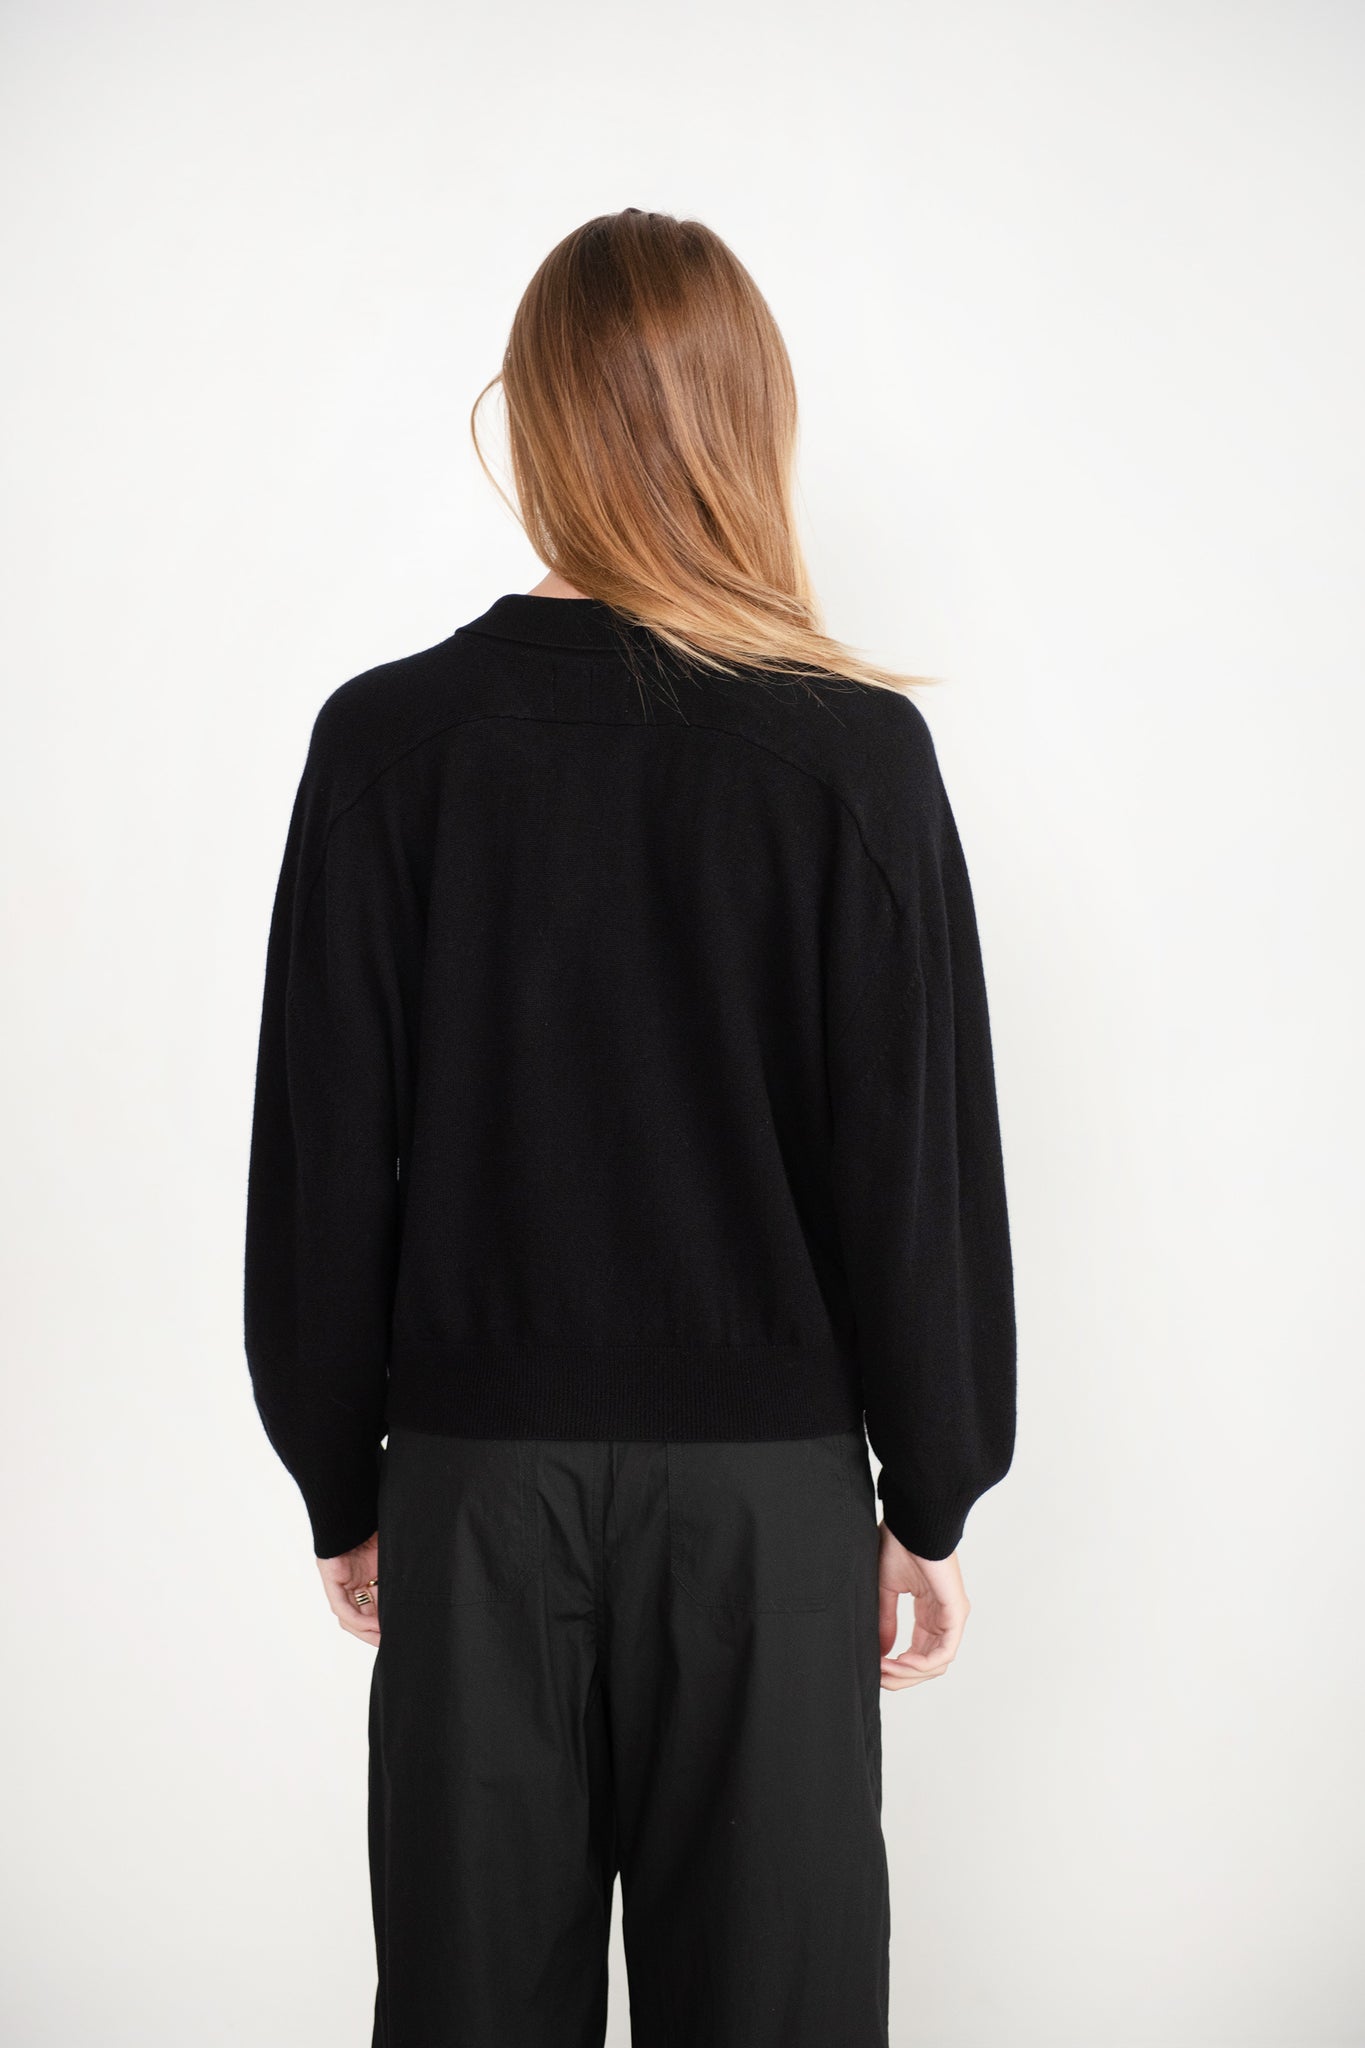 LOULOU STUDIO - Forana Cashmere Shirt, Black